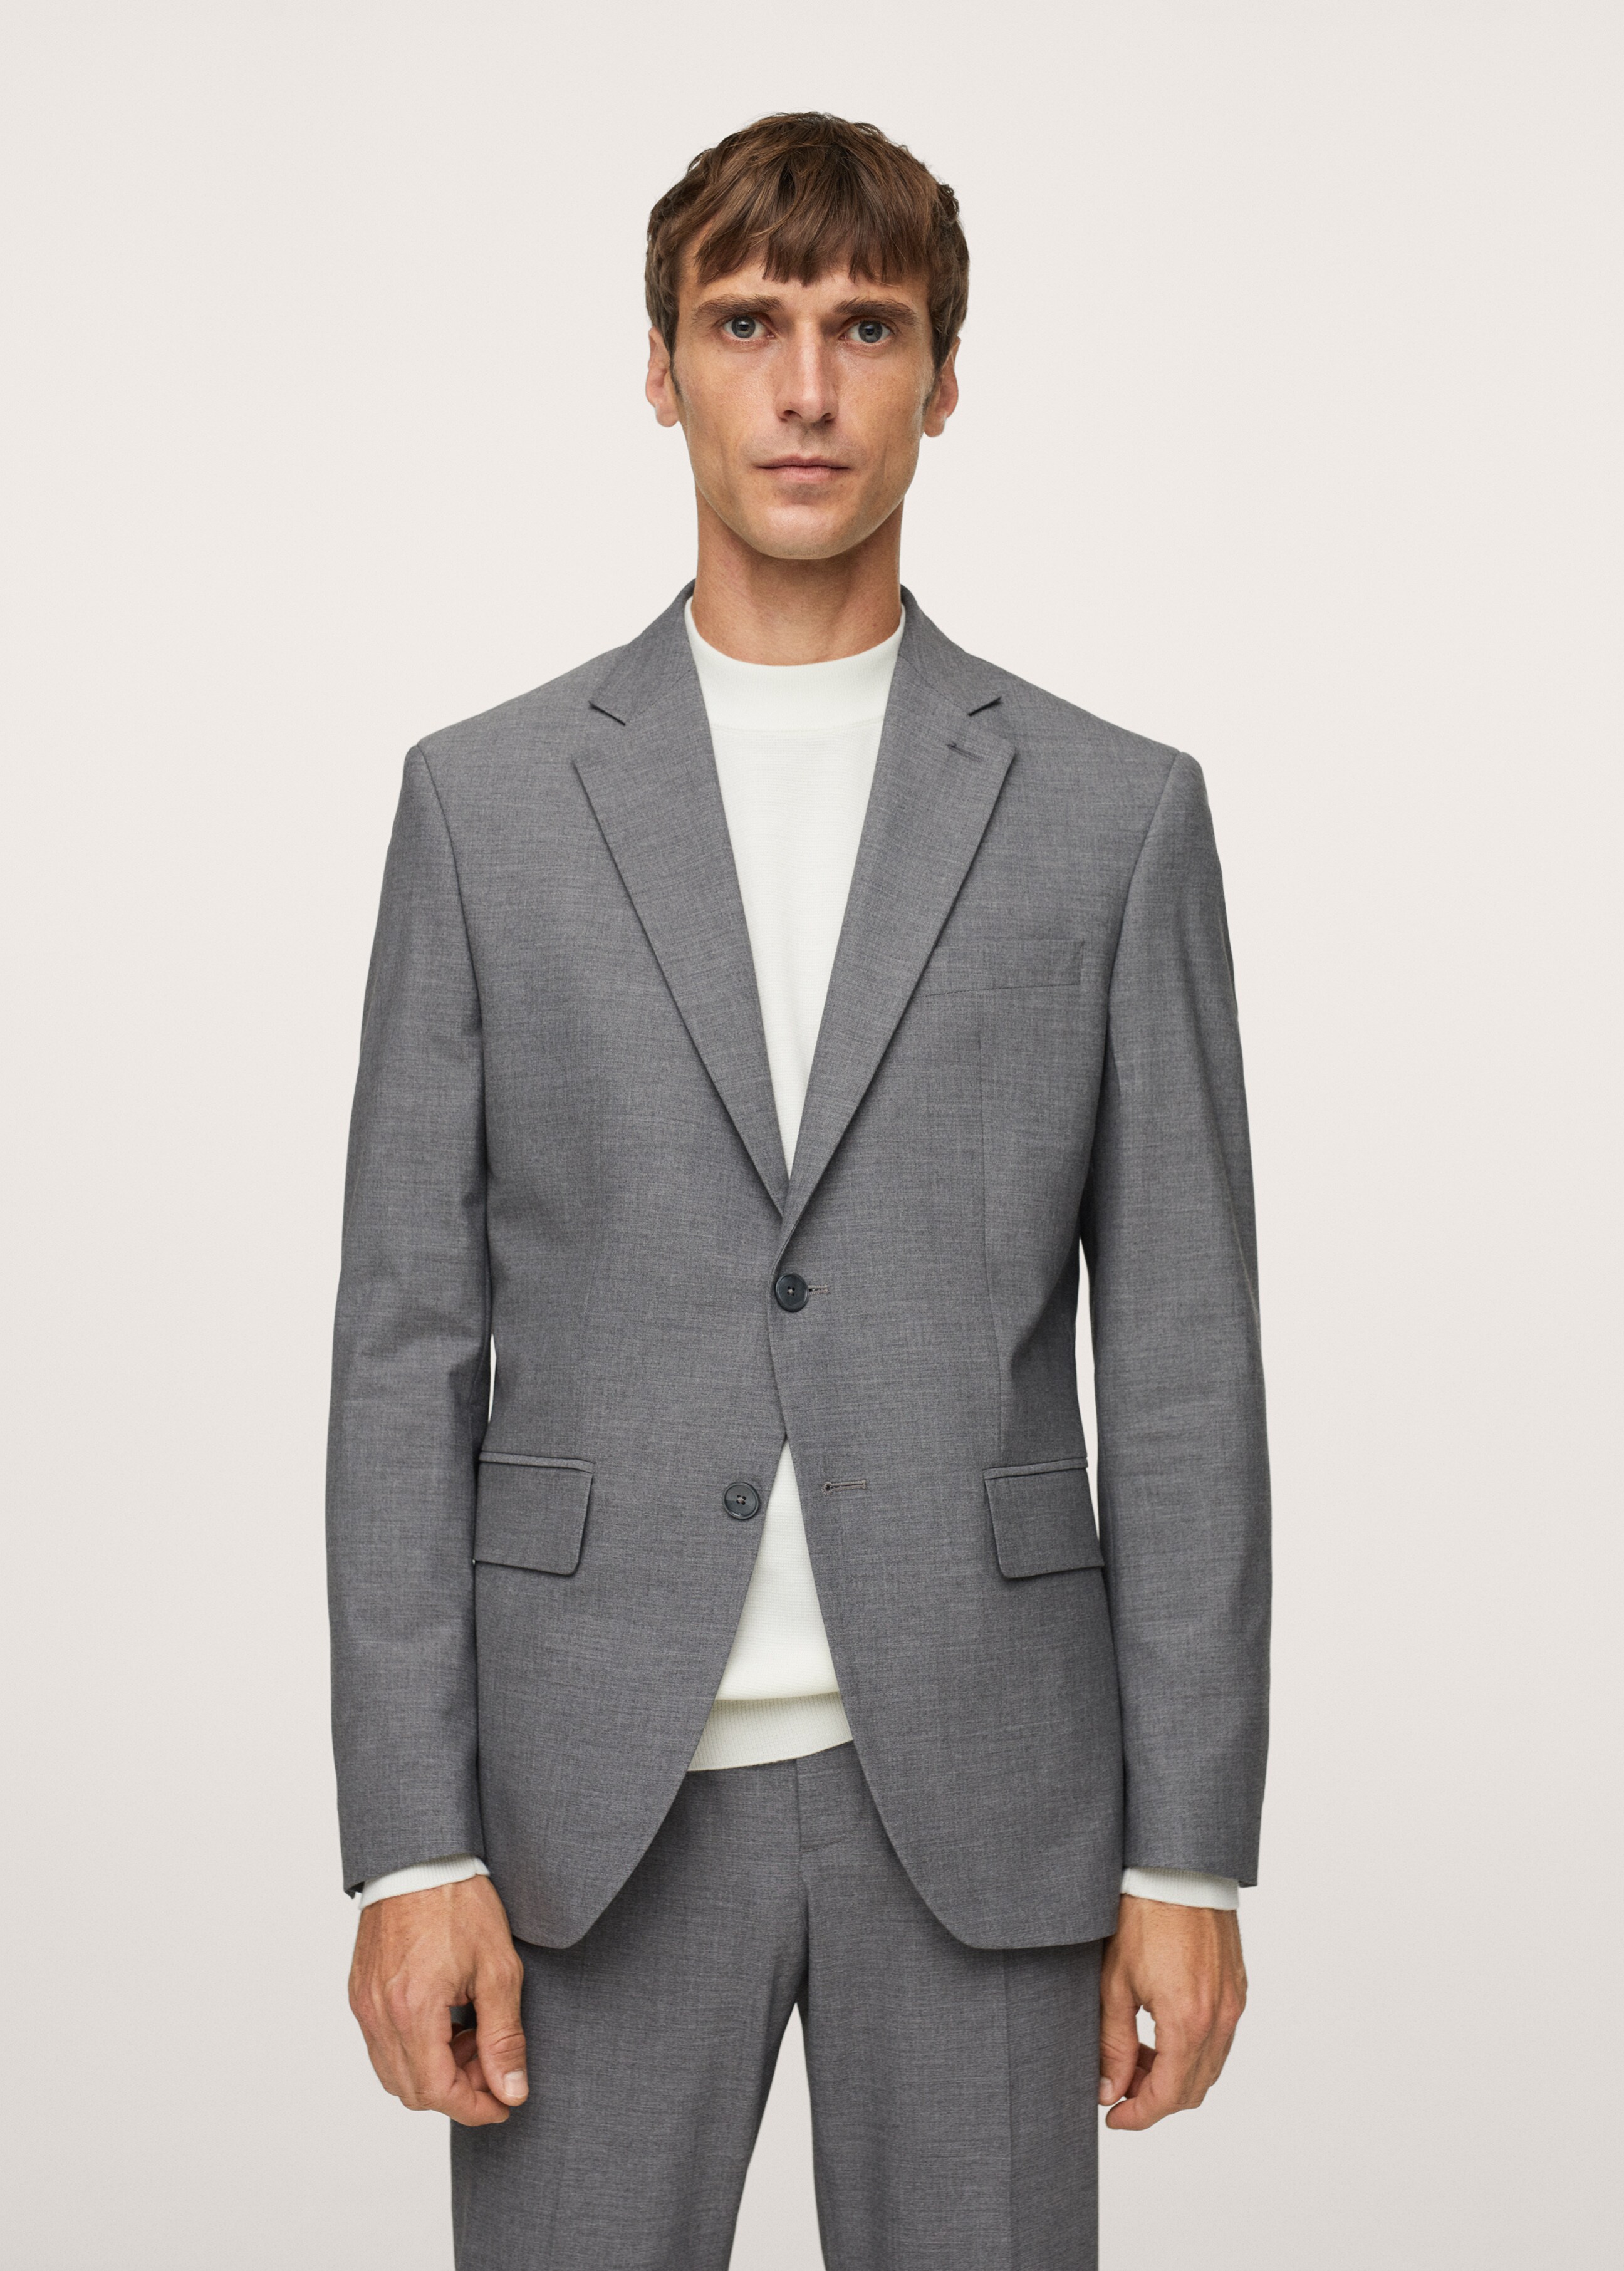 Slim fit microstructure suit blazer - Medium plane